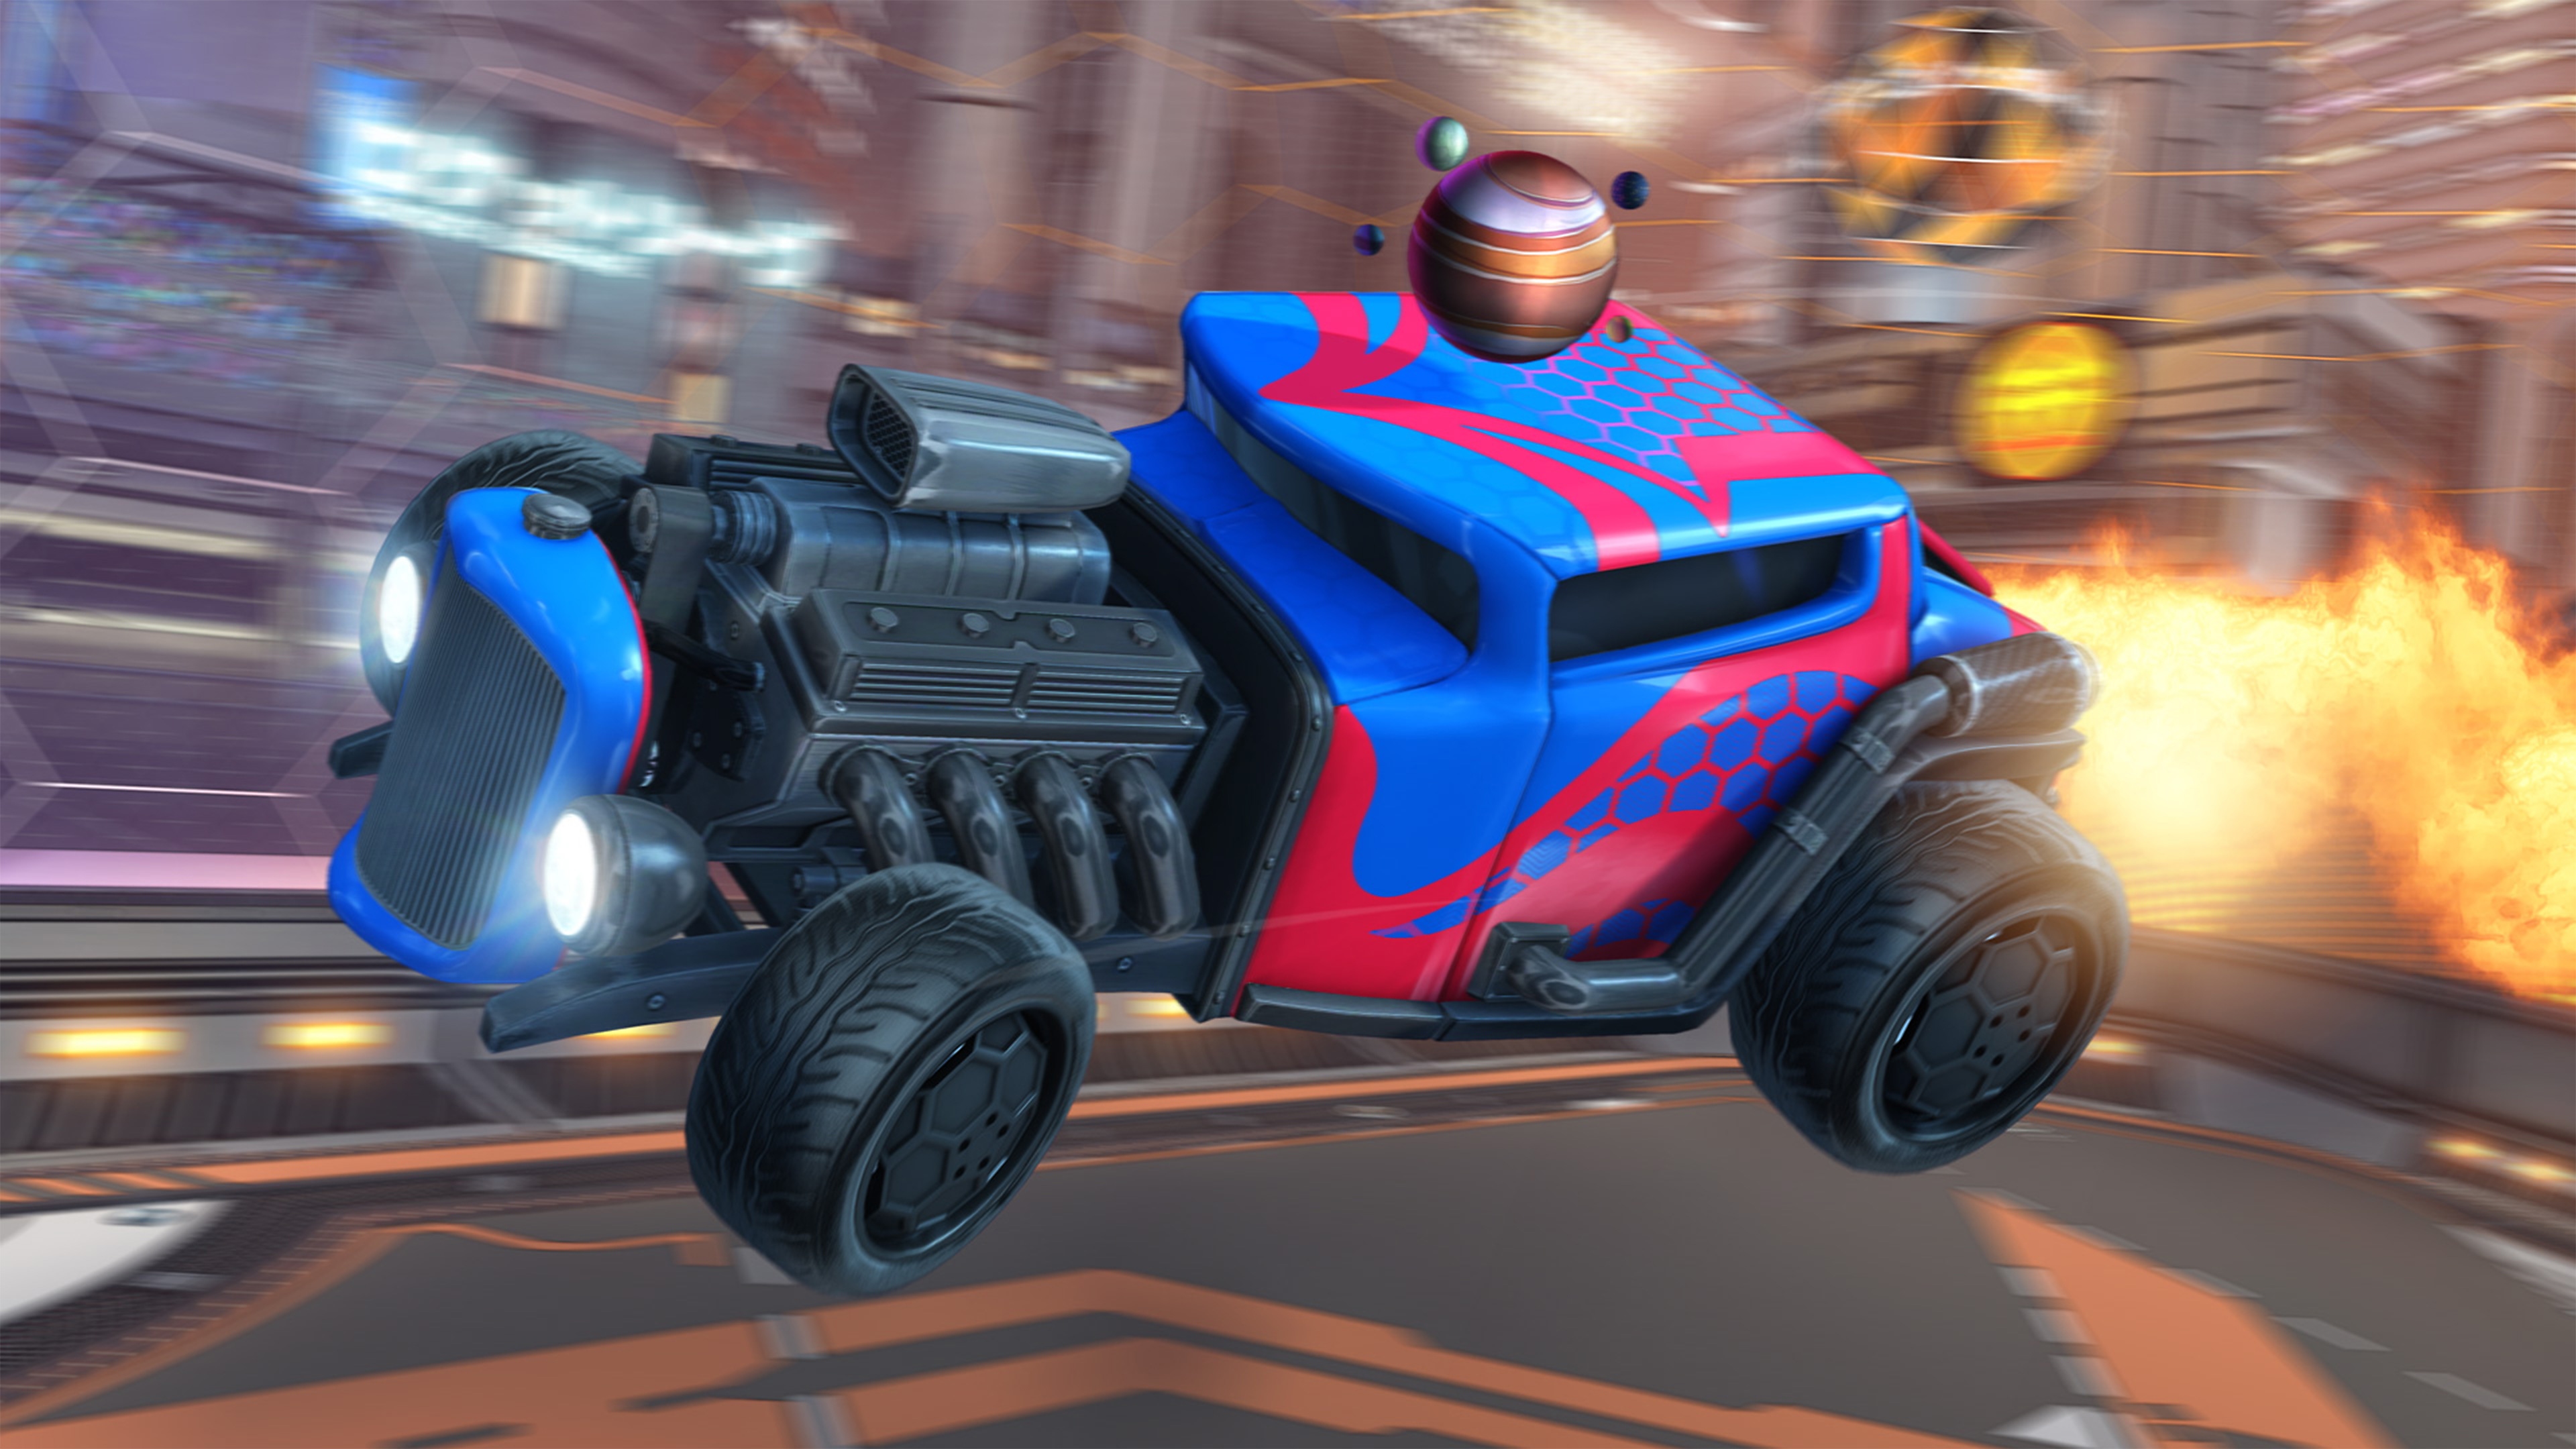 Screenshot von Rocket League, der ein Auto im Hot-Rod-Stil mit einem offenen Motor und einer rot-blauen Lackierung zeigt.